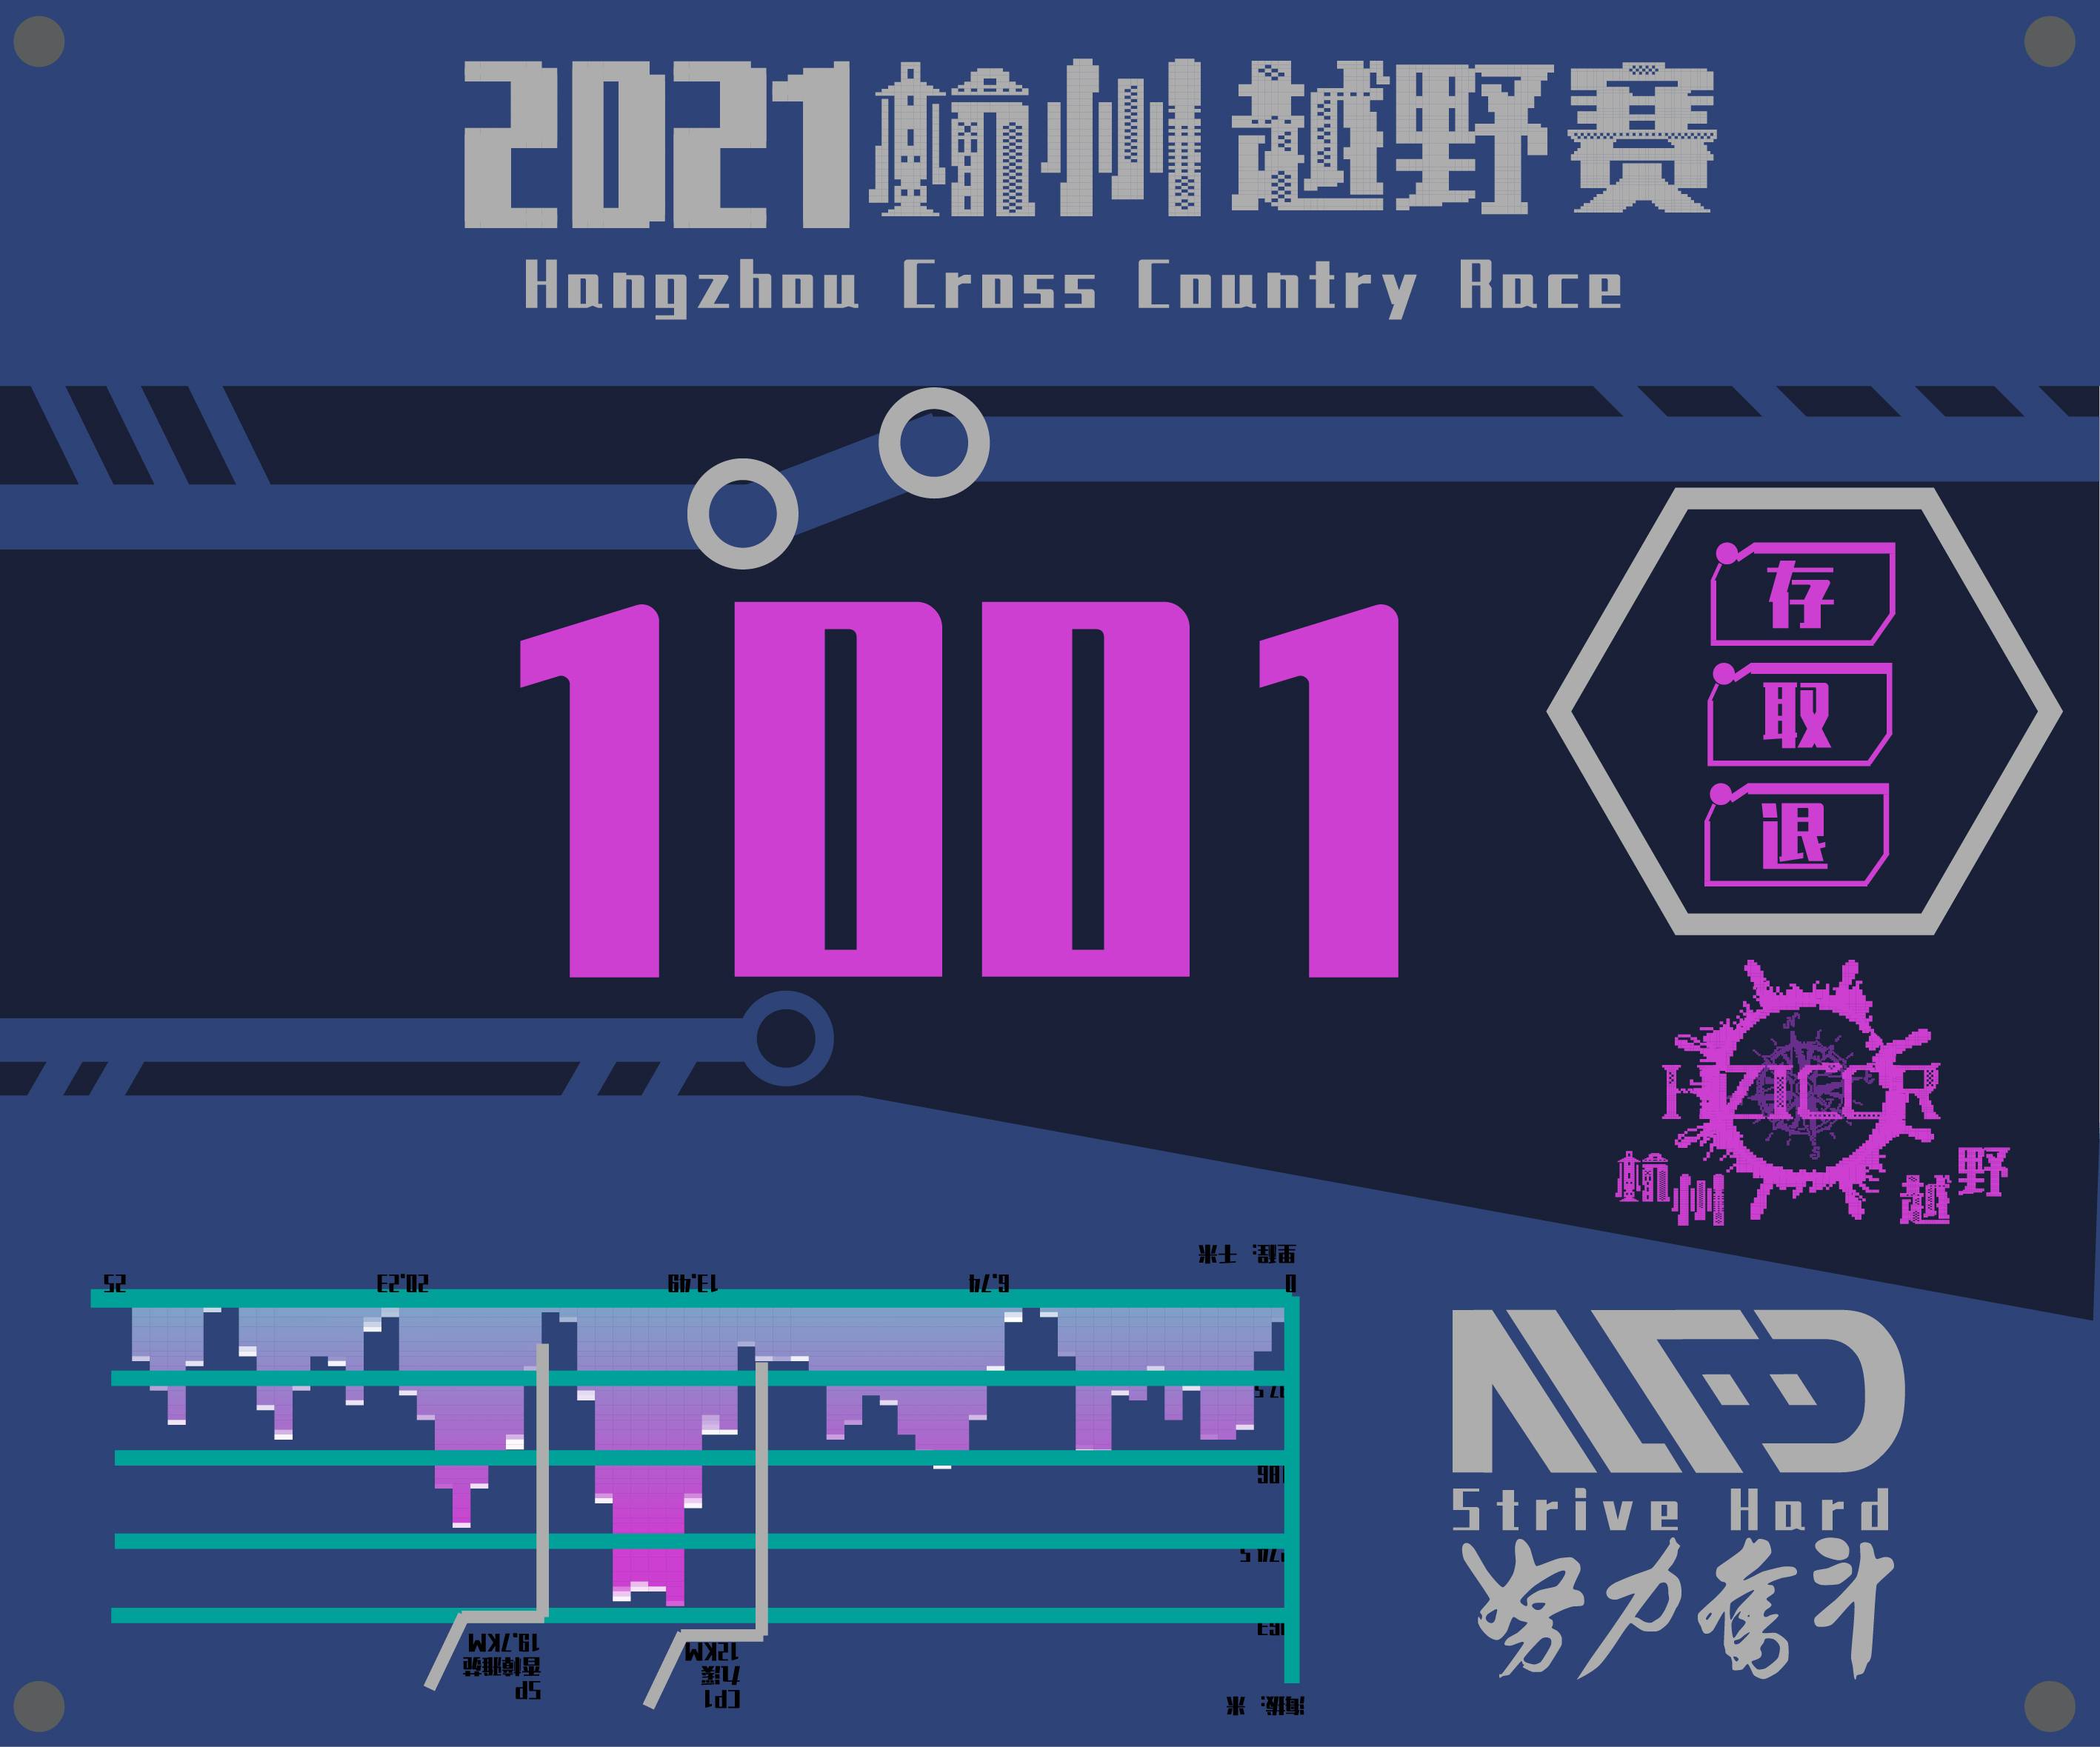 2021杭州国际越野赛号码布已转曲-03.jpg